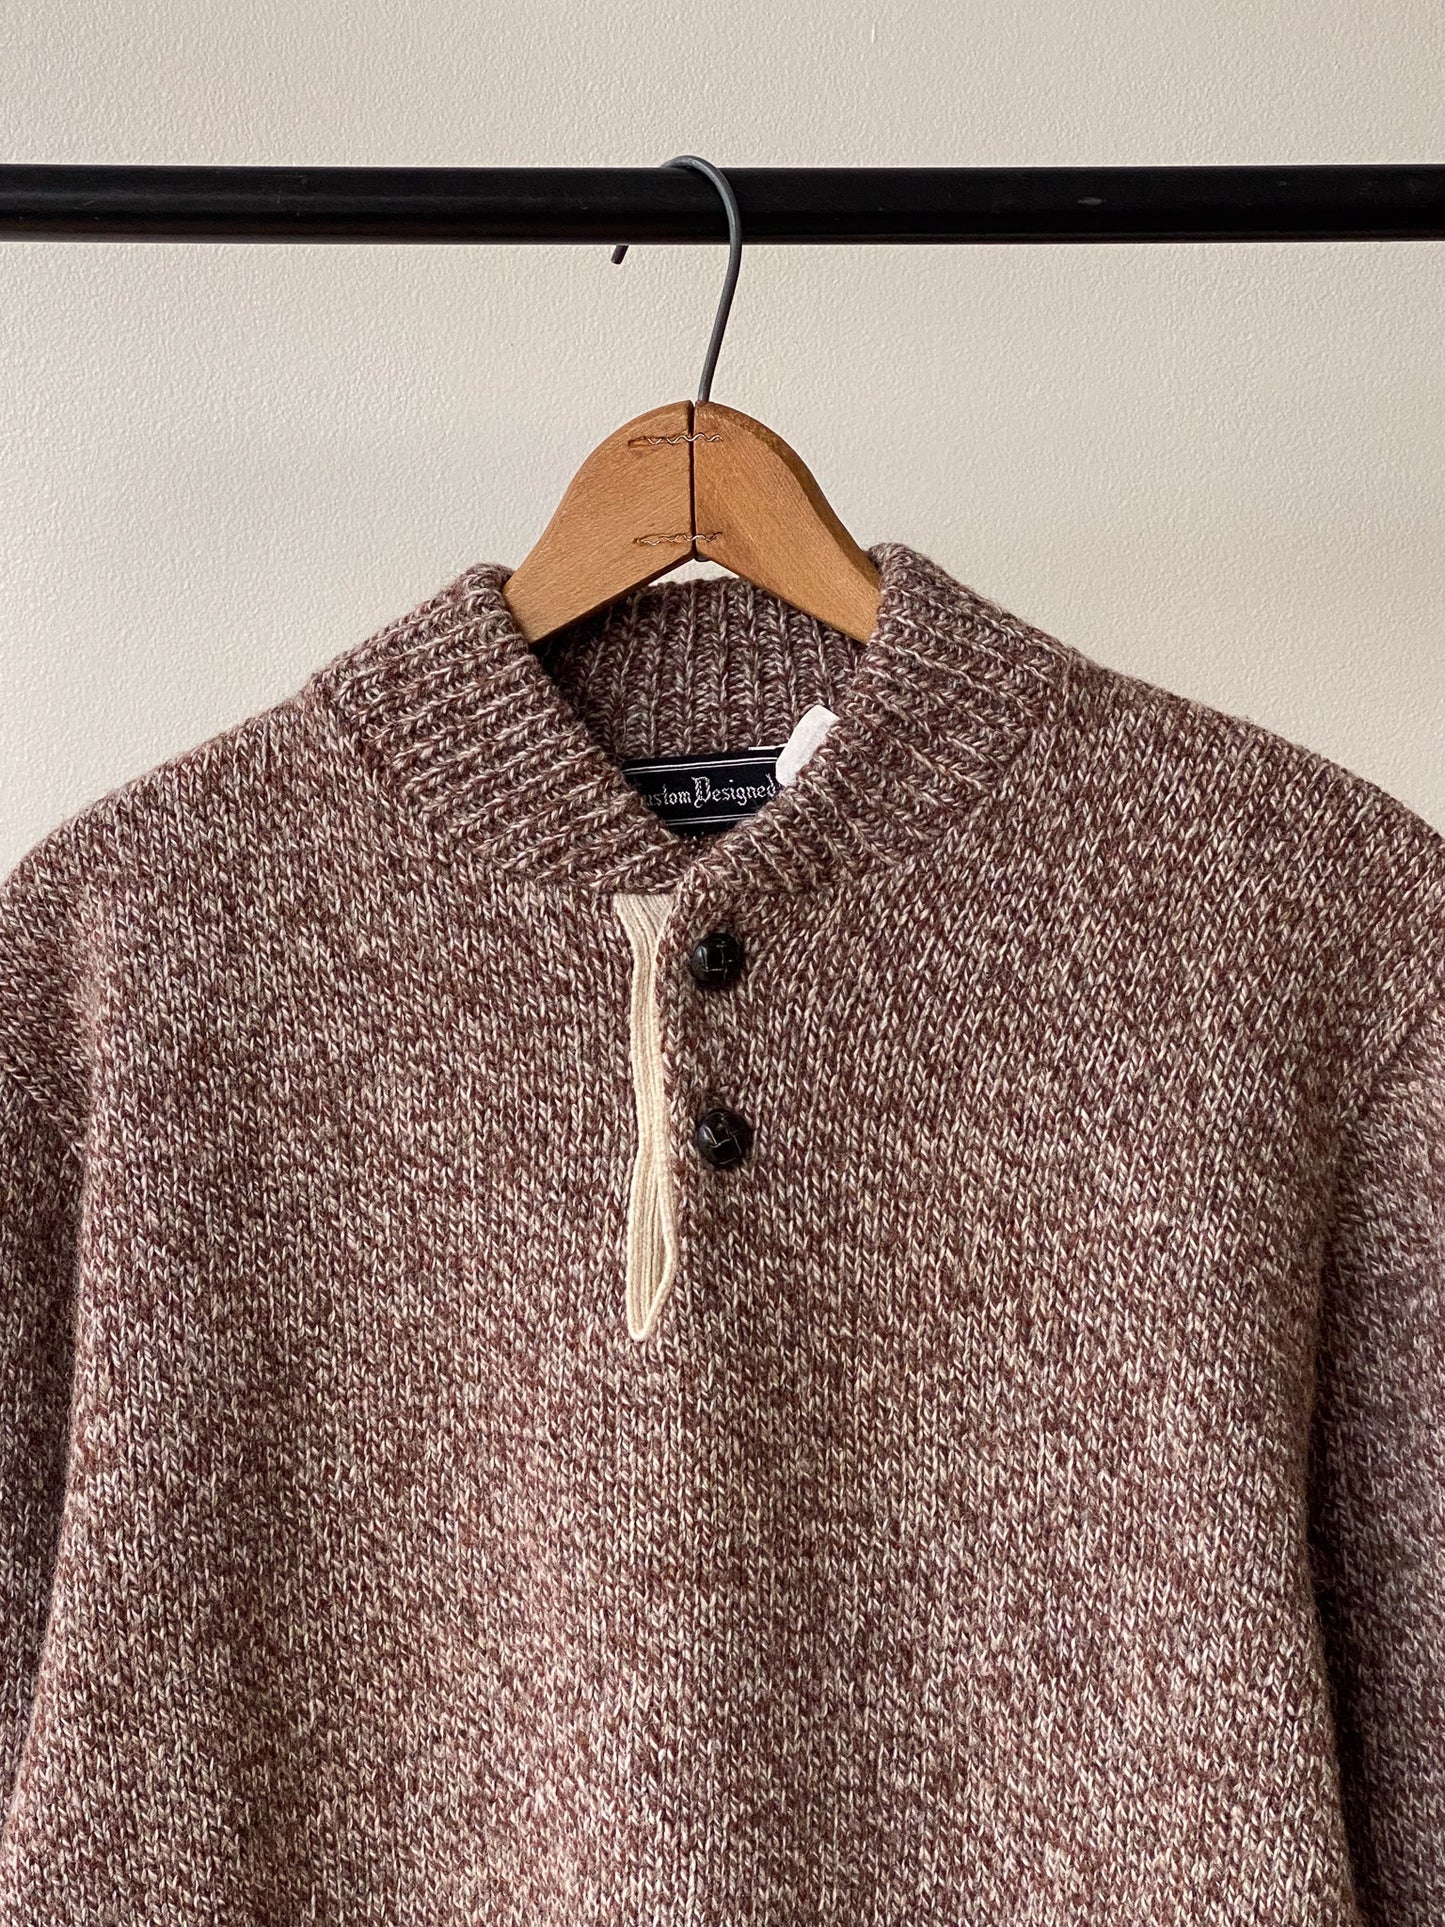 Wool Knit Henley Sweater—[M]